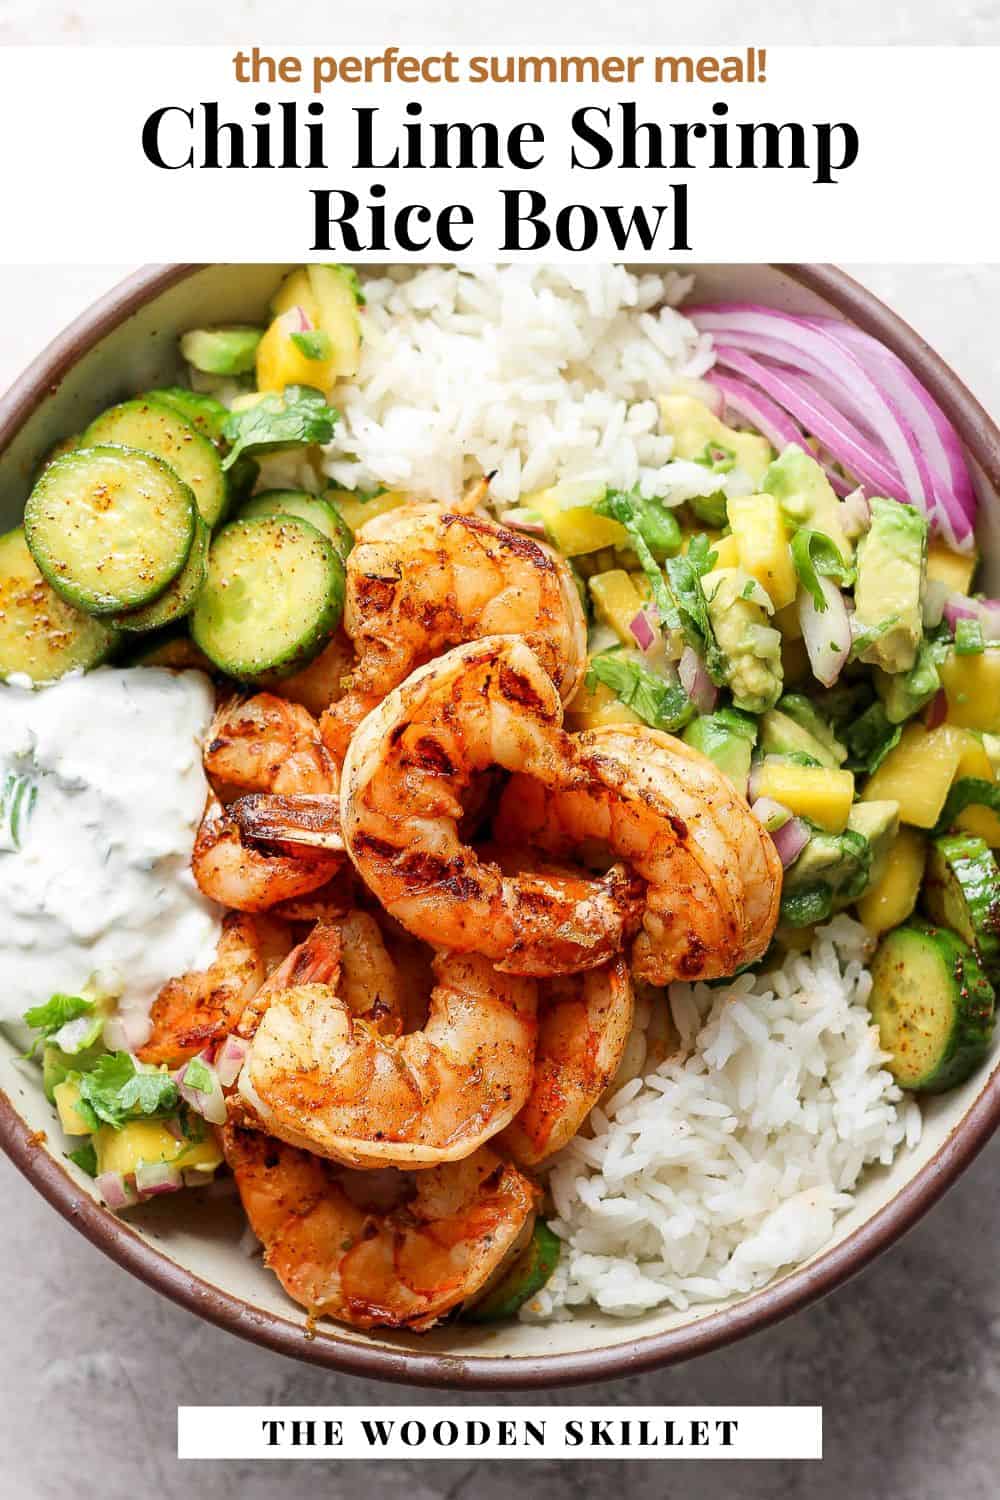 Pinterest image for chili lime shrimp rice bowl.